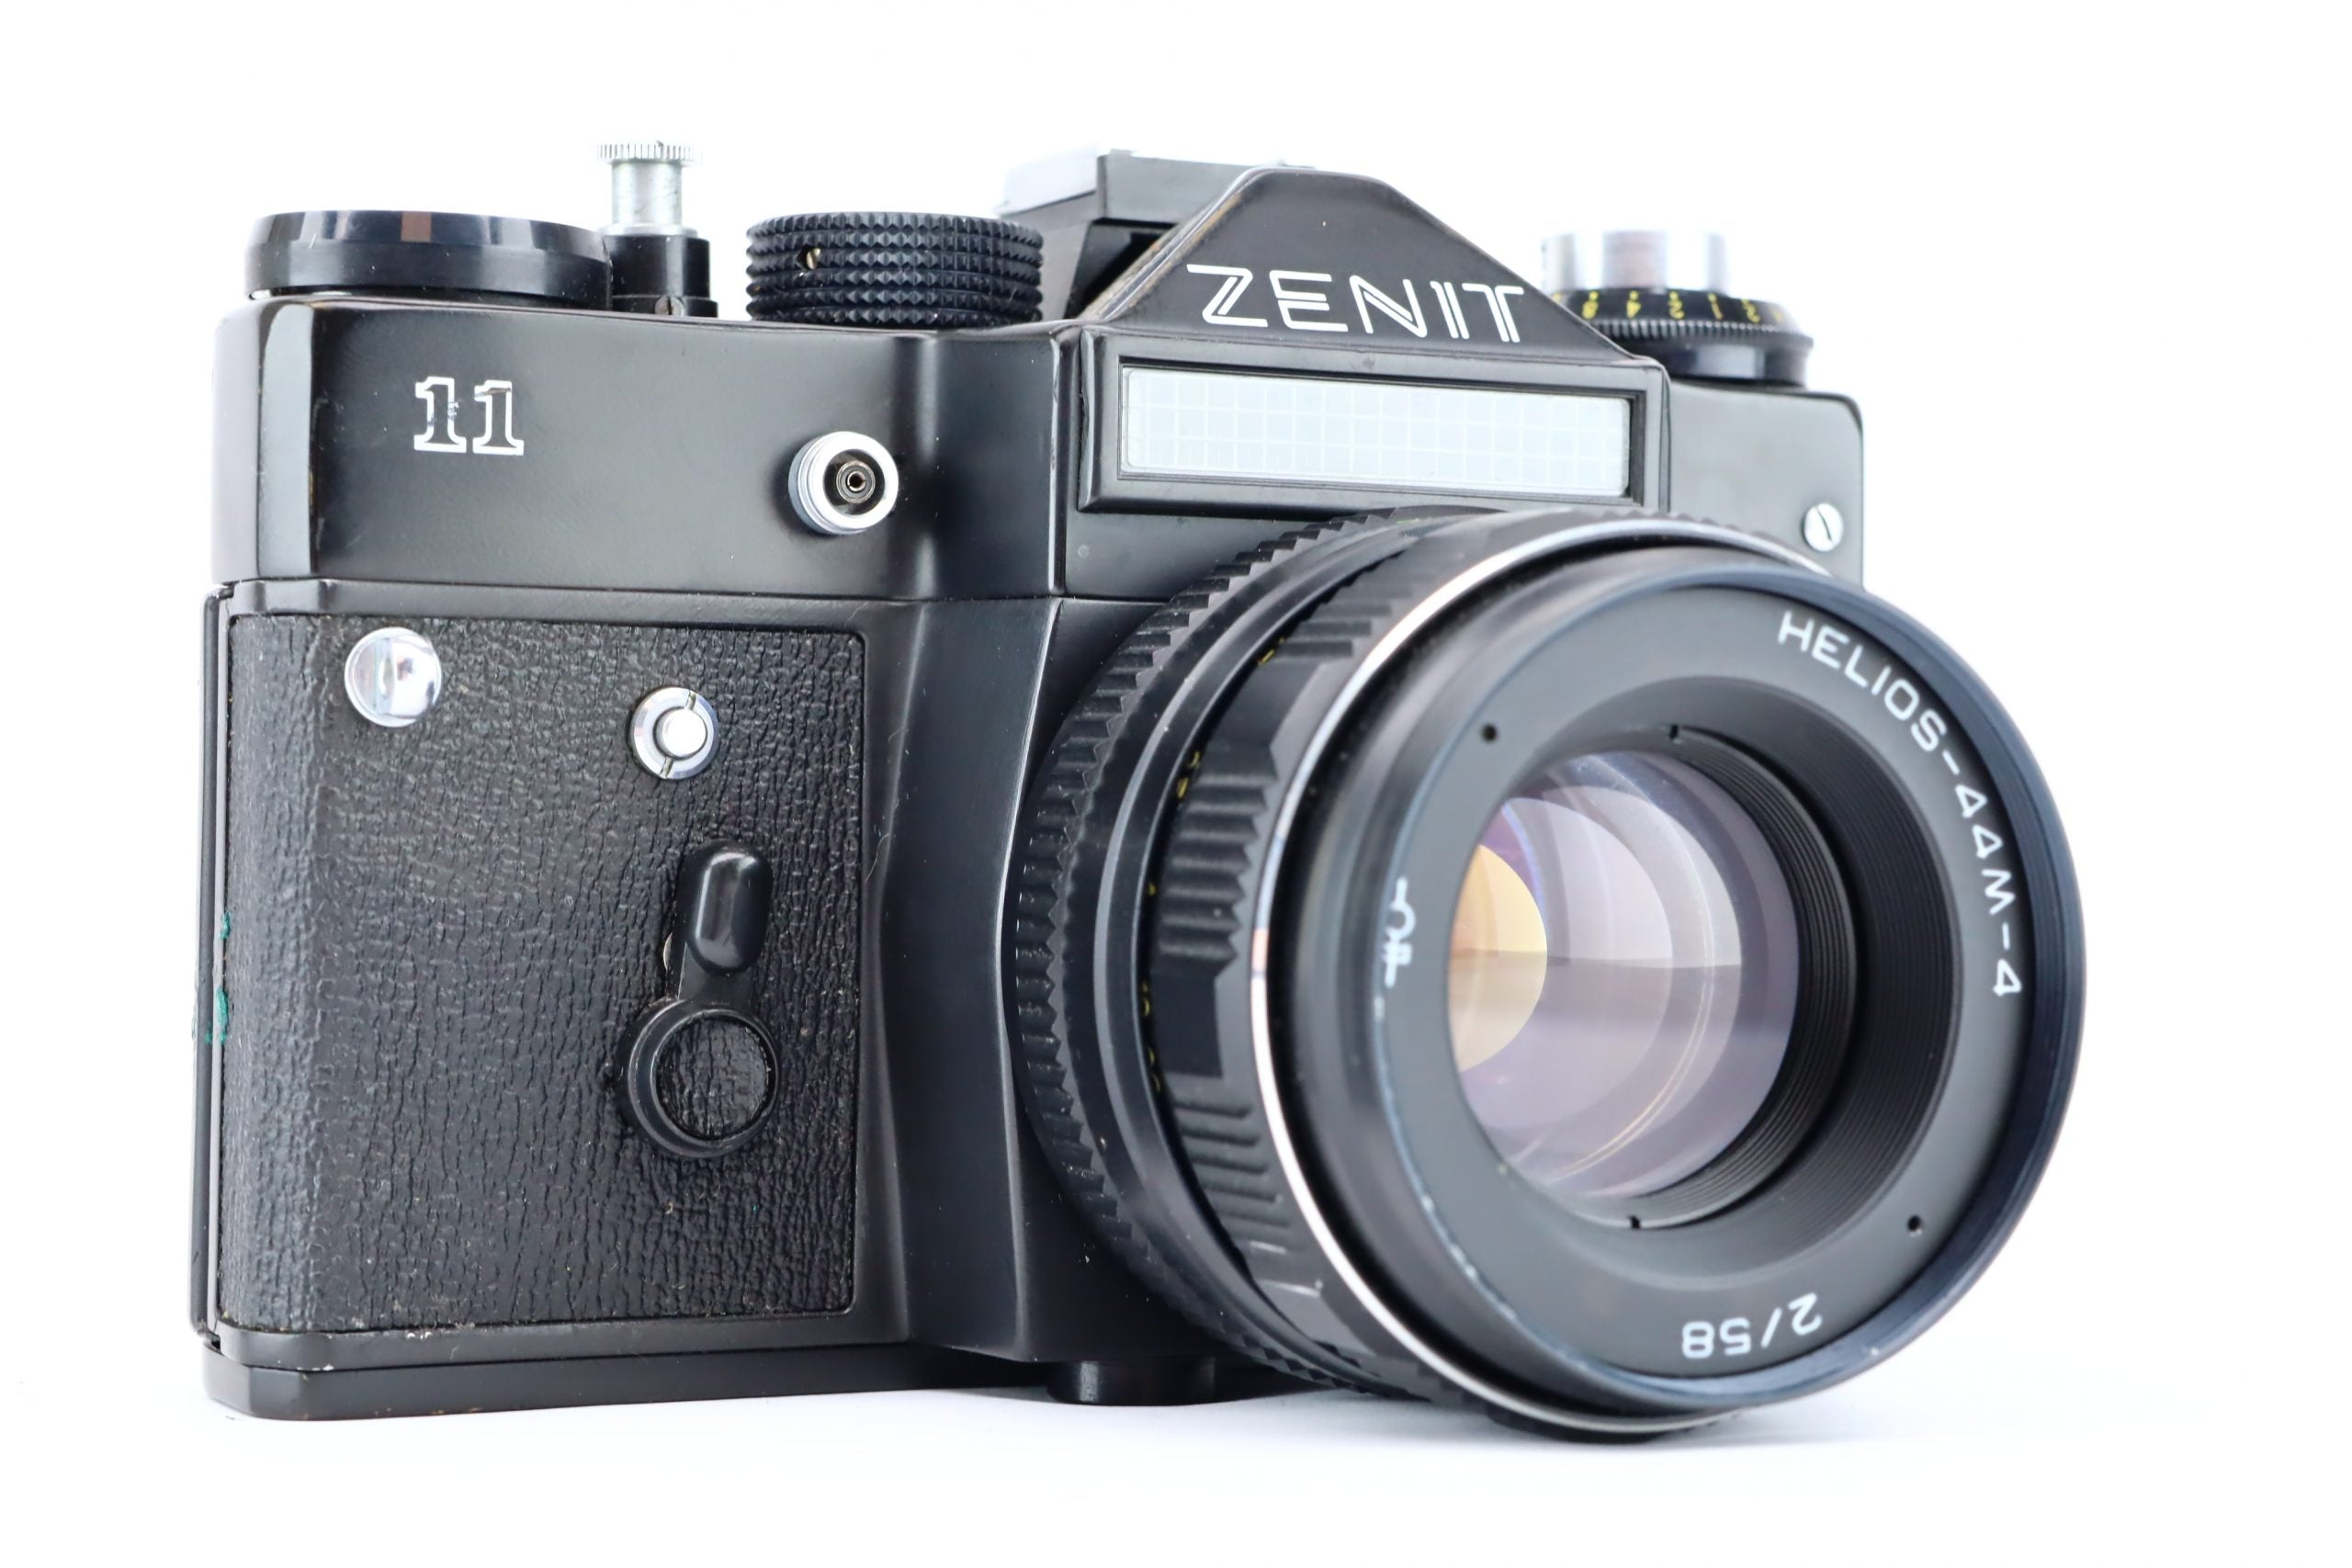 一眼レフゼニット Zenit-11 HELIOS-44M BIOTAR #1524B - カメラ、光学機器